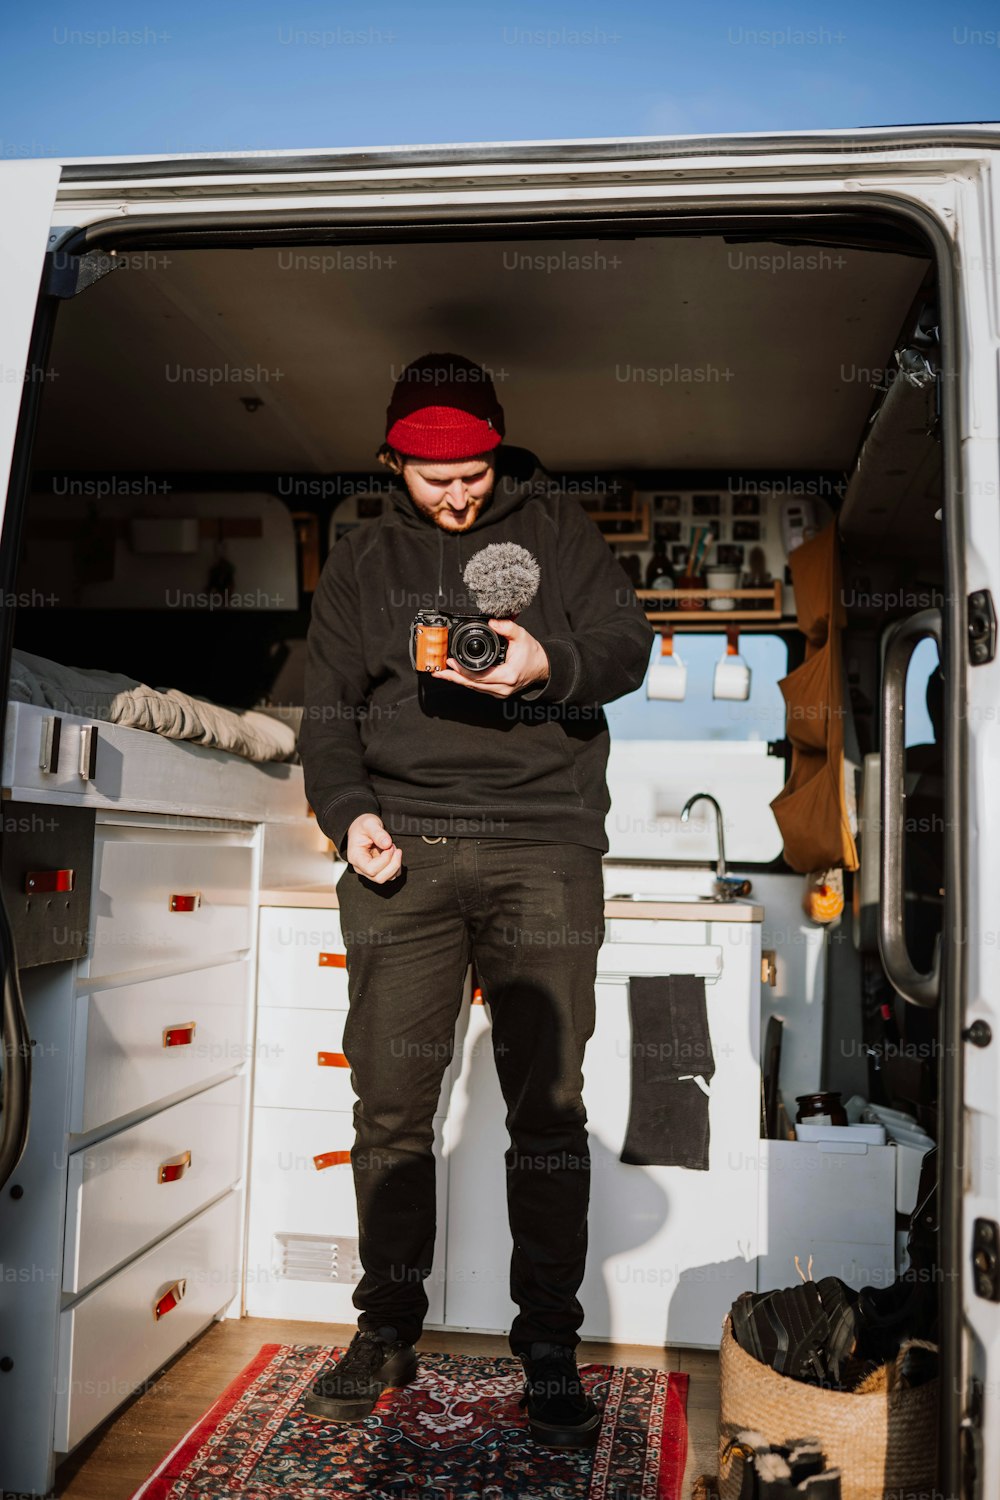 Un uomo in piedi nel retro di un furgone con in mano una macchina fotografica